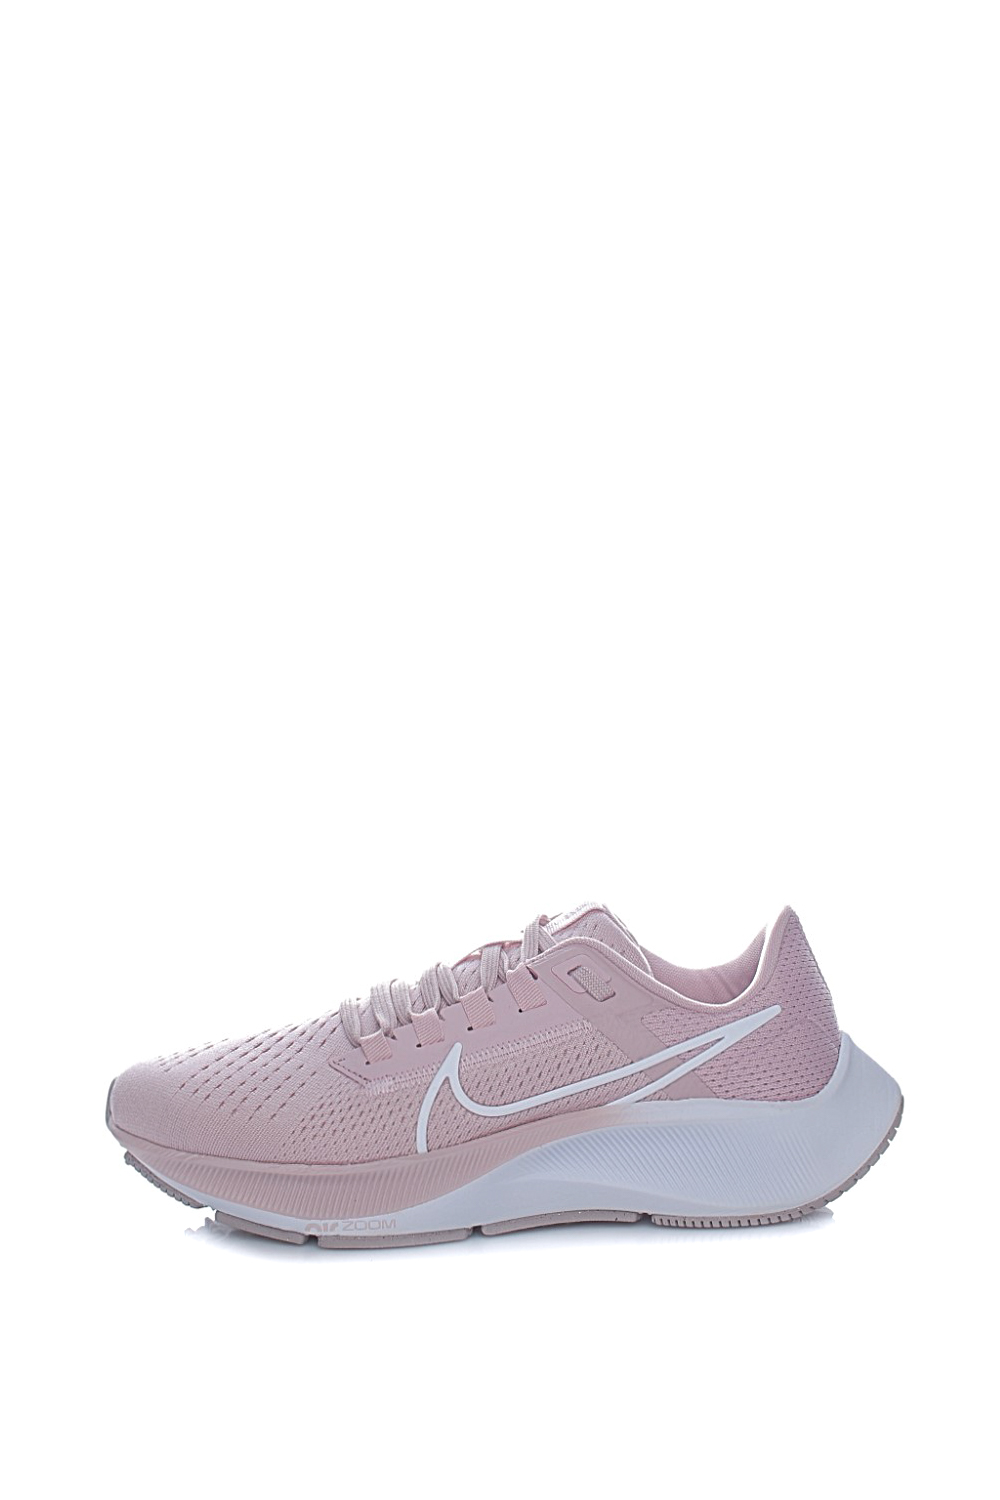 NIKE – Γυναικεια παπουτσια για τρεξιμο NIKE AIR ZOOM PEGASUS 38 ροζ